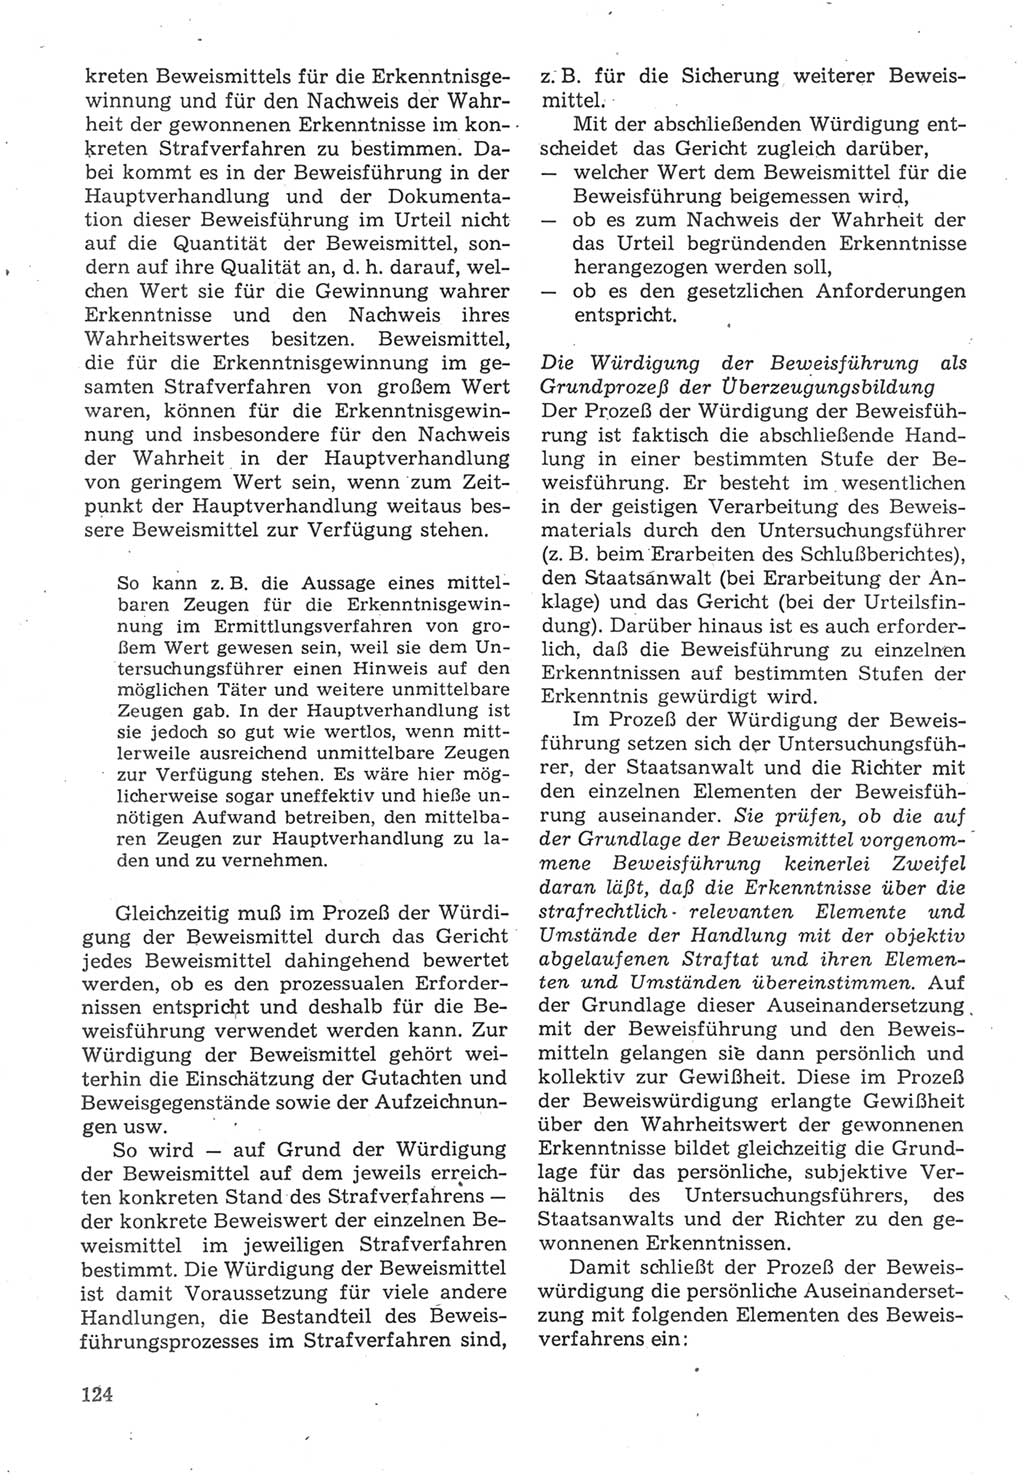 Strafverfahrensrecht [Deutsche Demokratische Republik (DDR)], Lehrbuch 1987, Seite 124 (Strafverf.-R. DDR Lb. 1987, S. 124)